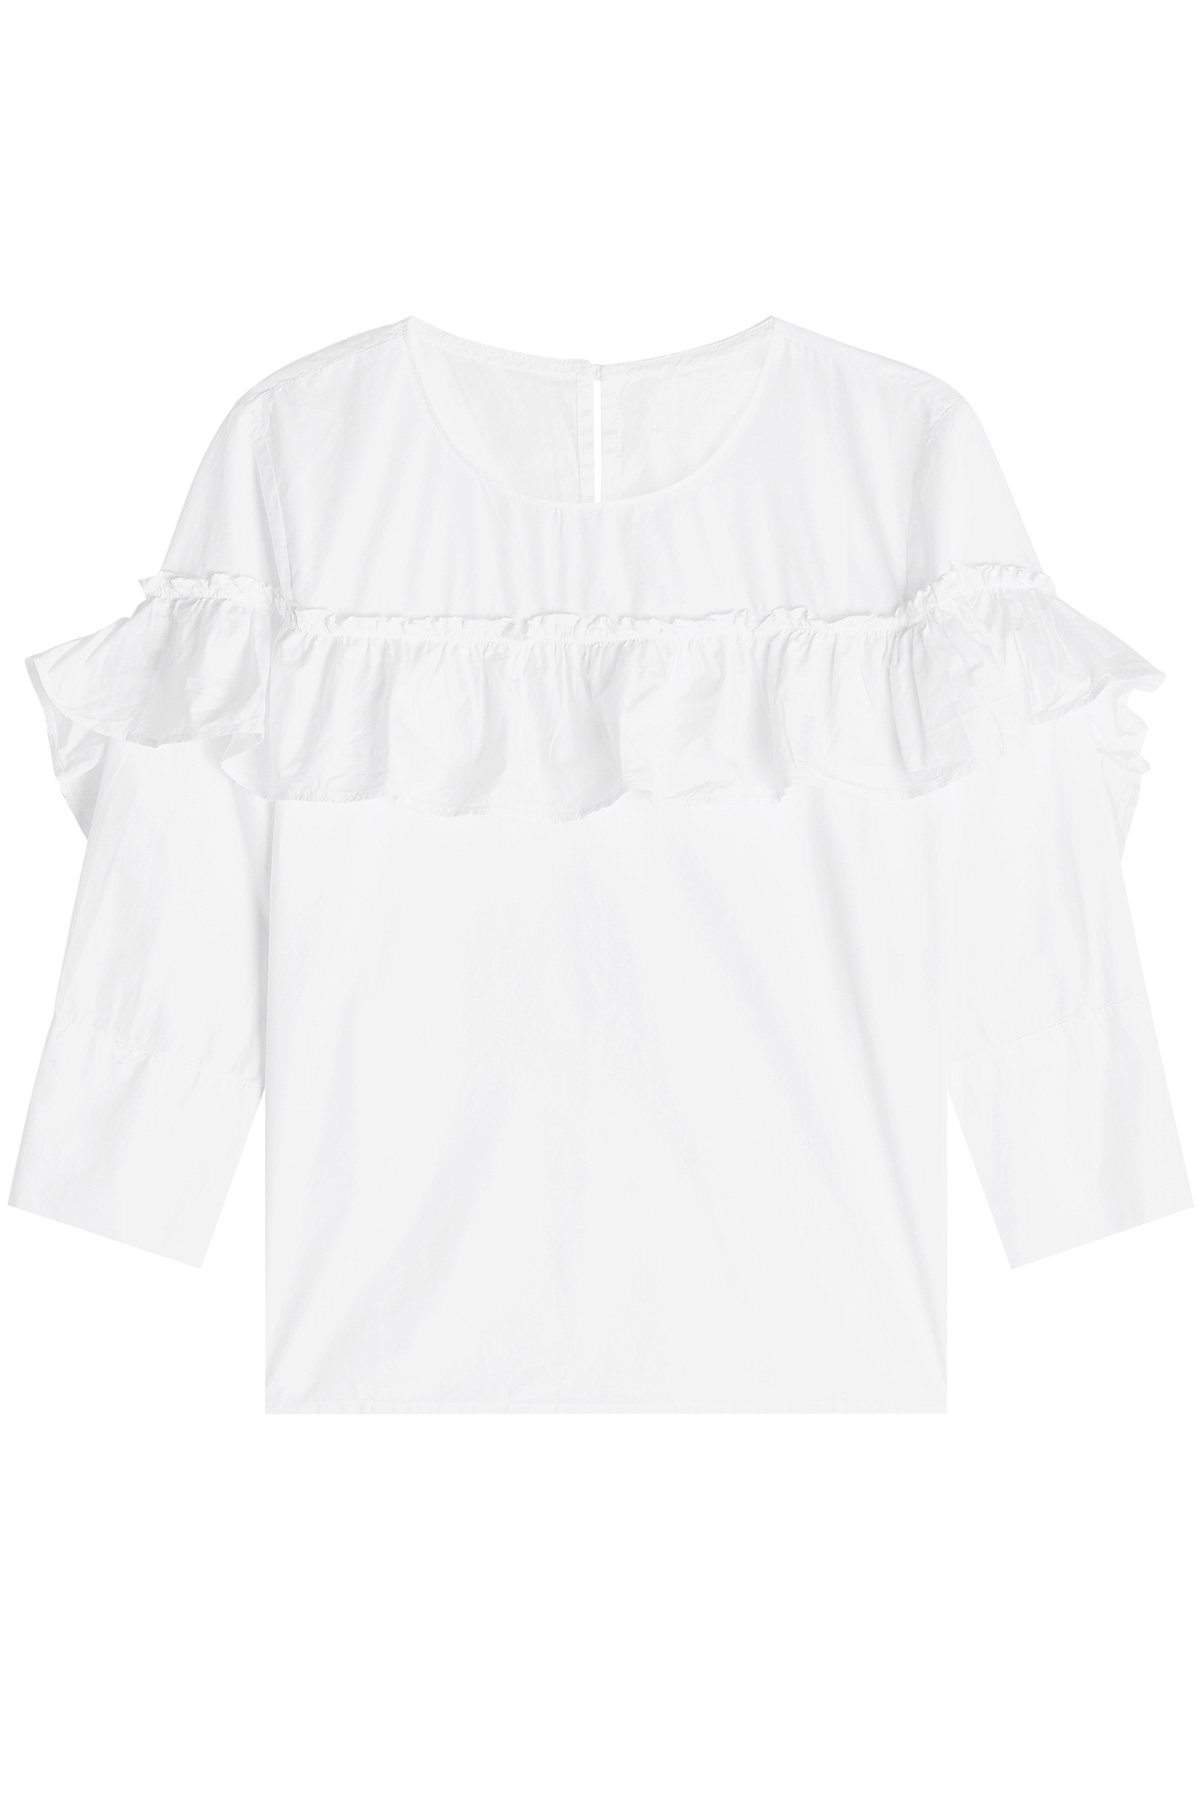 Velvet - Aluna Ruffled Cotton Shirt